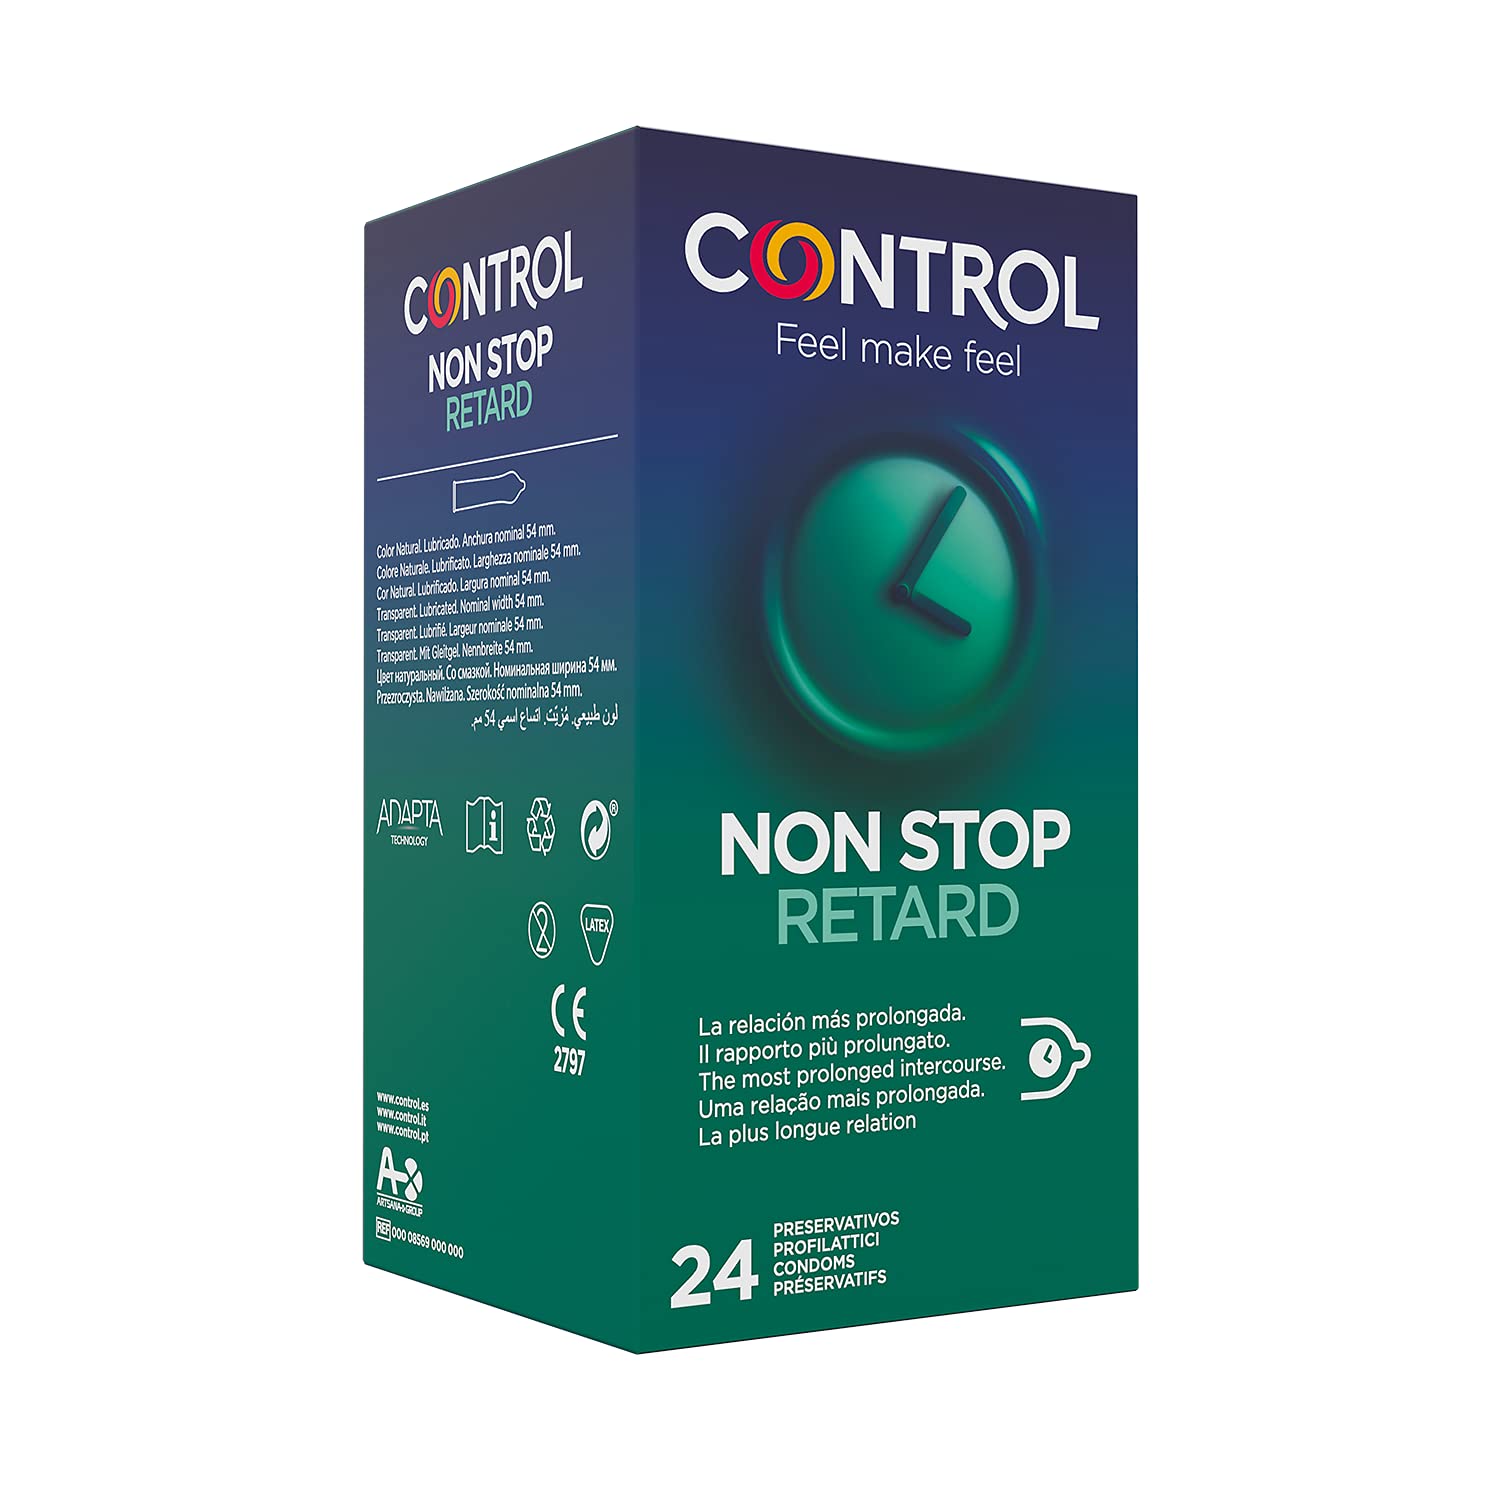 CONTROL RETARD Kondome aus Naturlatex mit verzögernder Wirkung - 24 Stück.